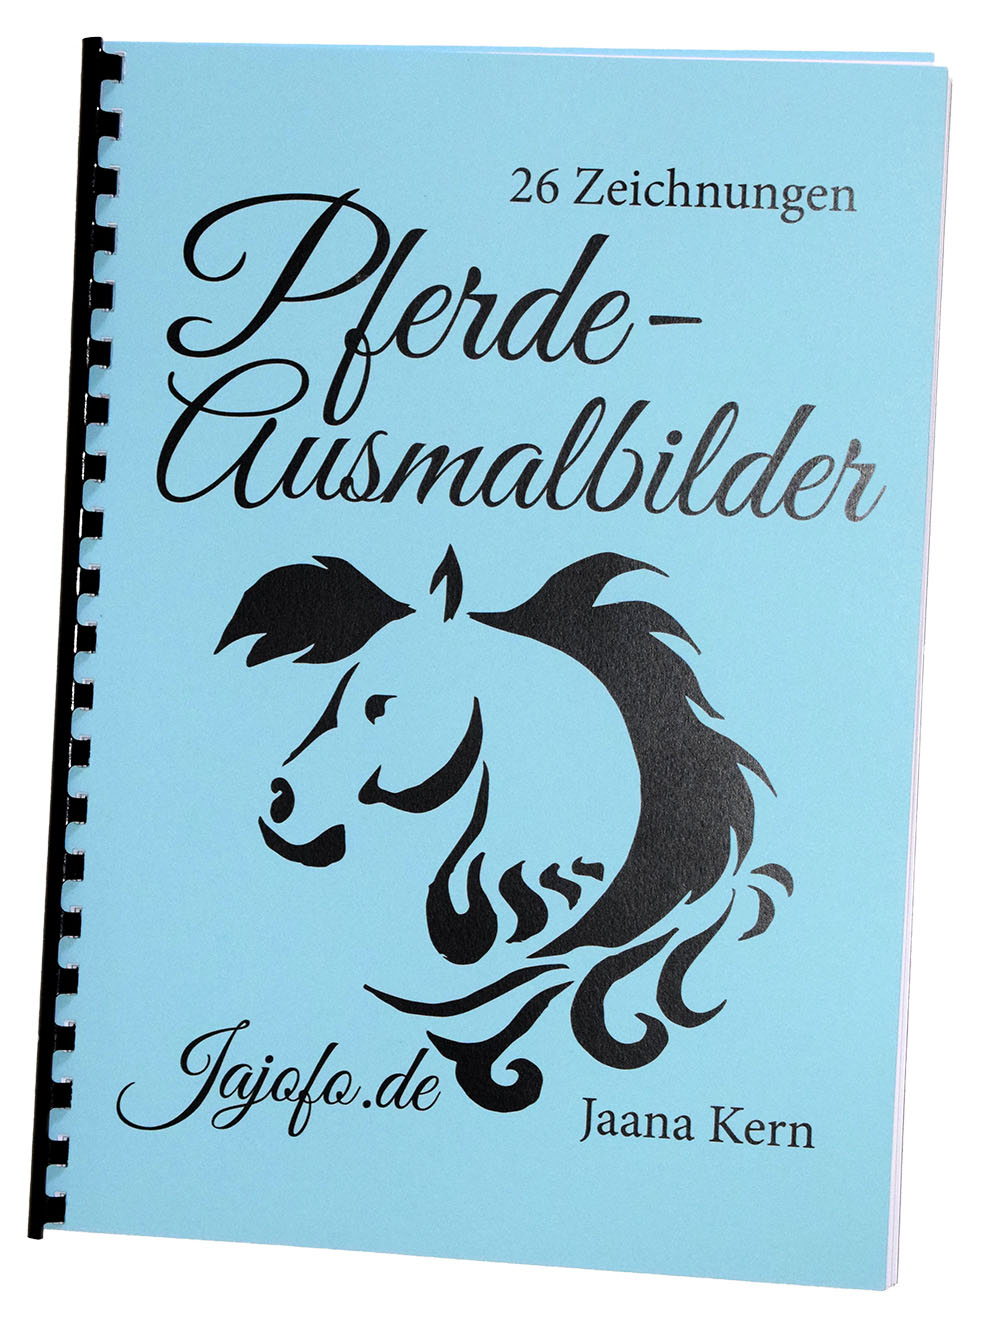 26 Pferdeausmalbilder in einem Buch! Das erste Buch von Jaana Kern